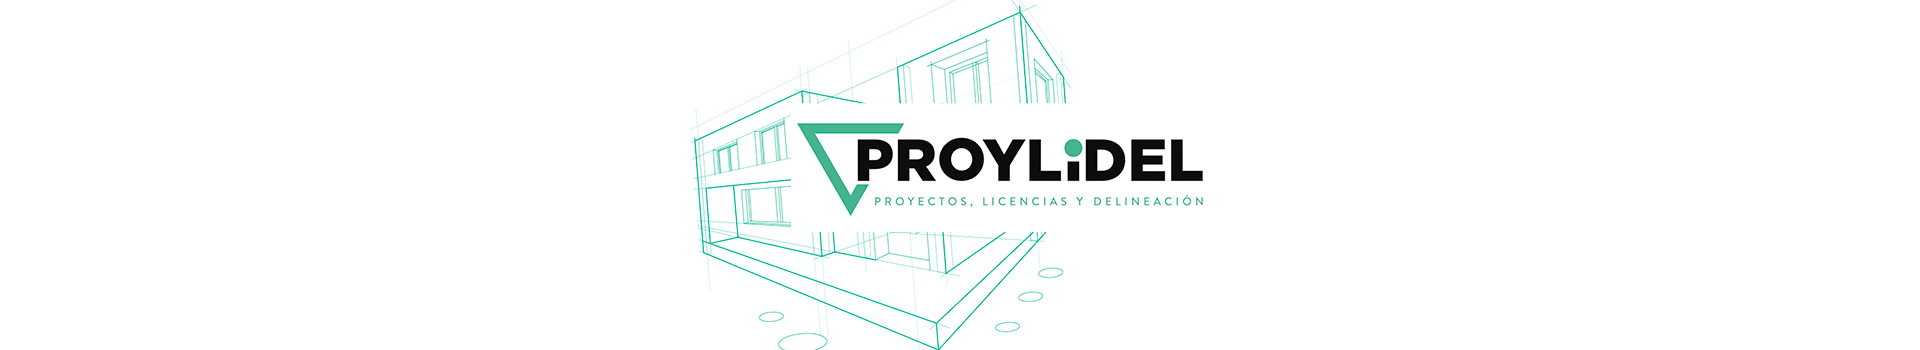 PROYLIDEL, Proyectos, Licencias y Delineación en Madrid